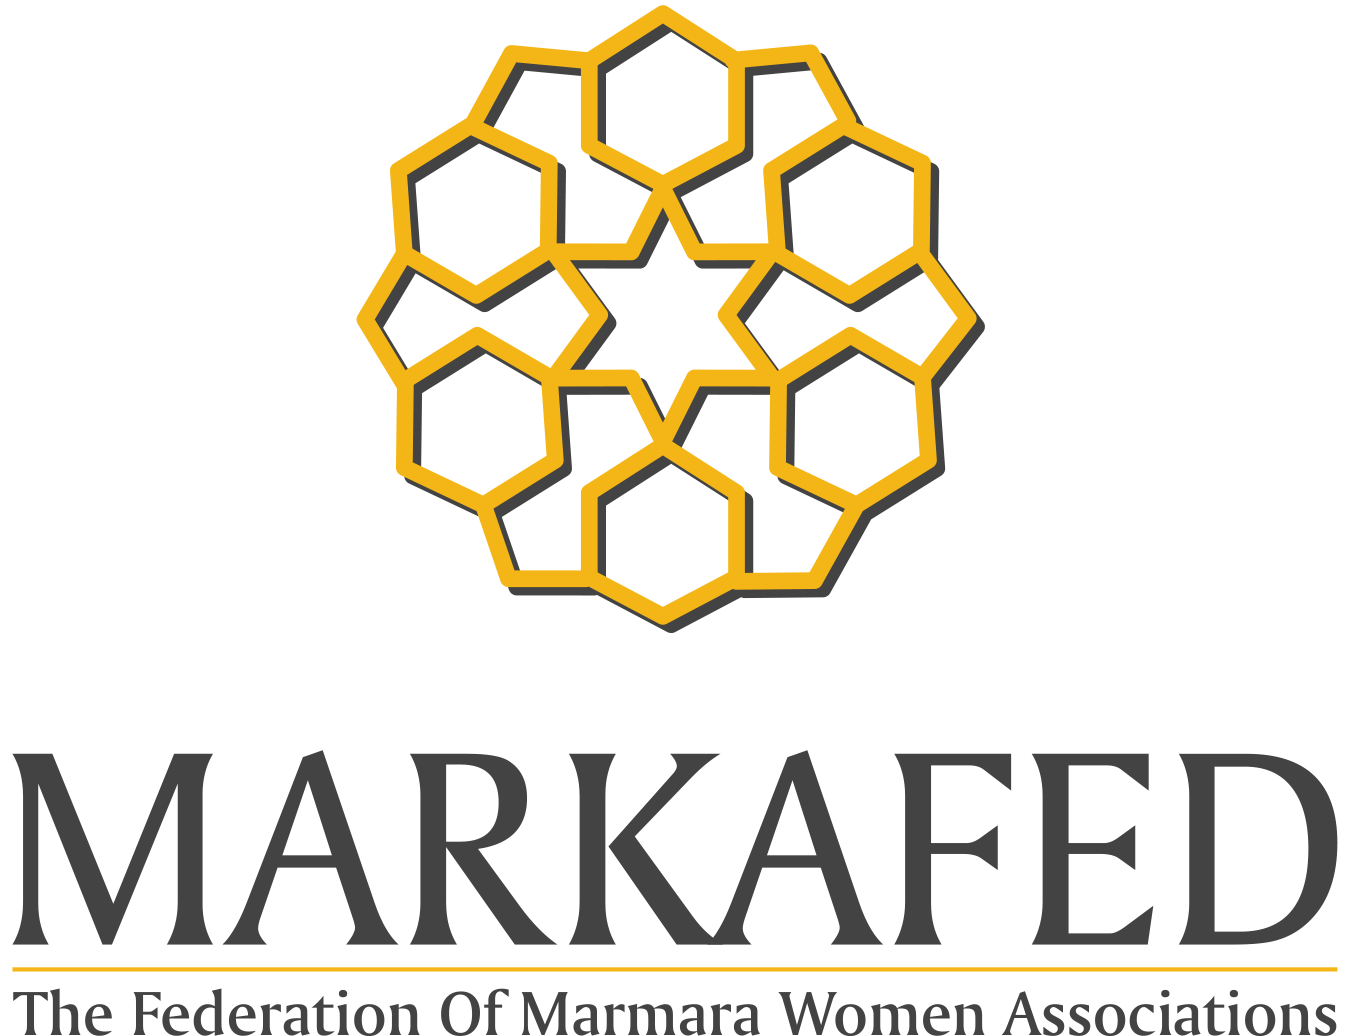 The Federation of Marmara Women Associations - Istanbul / Turkey